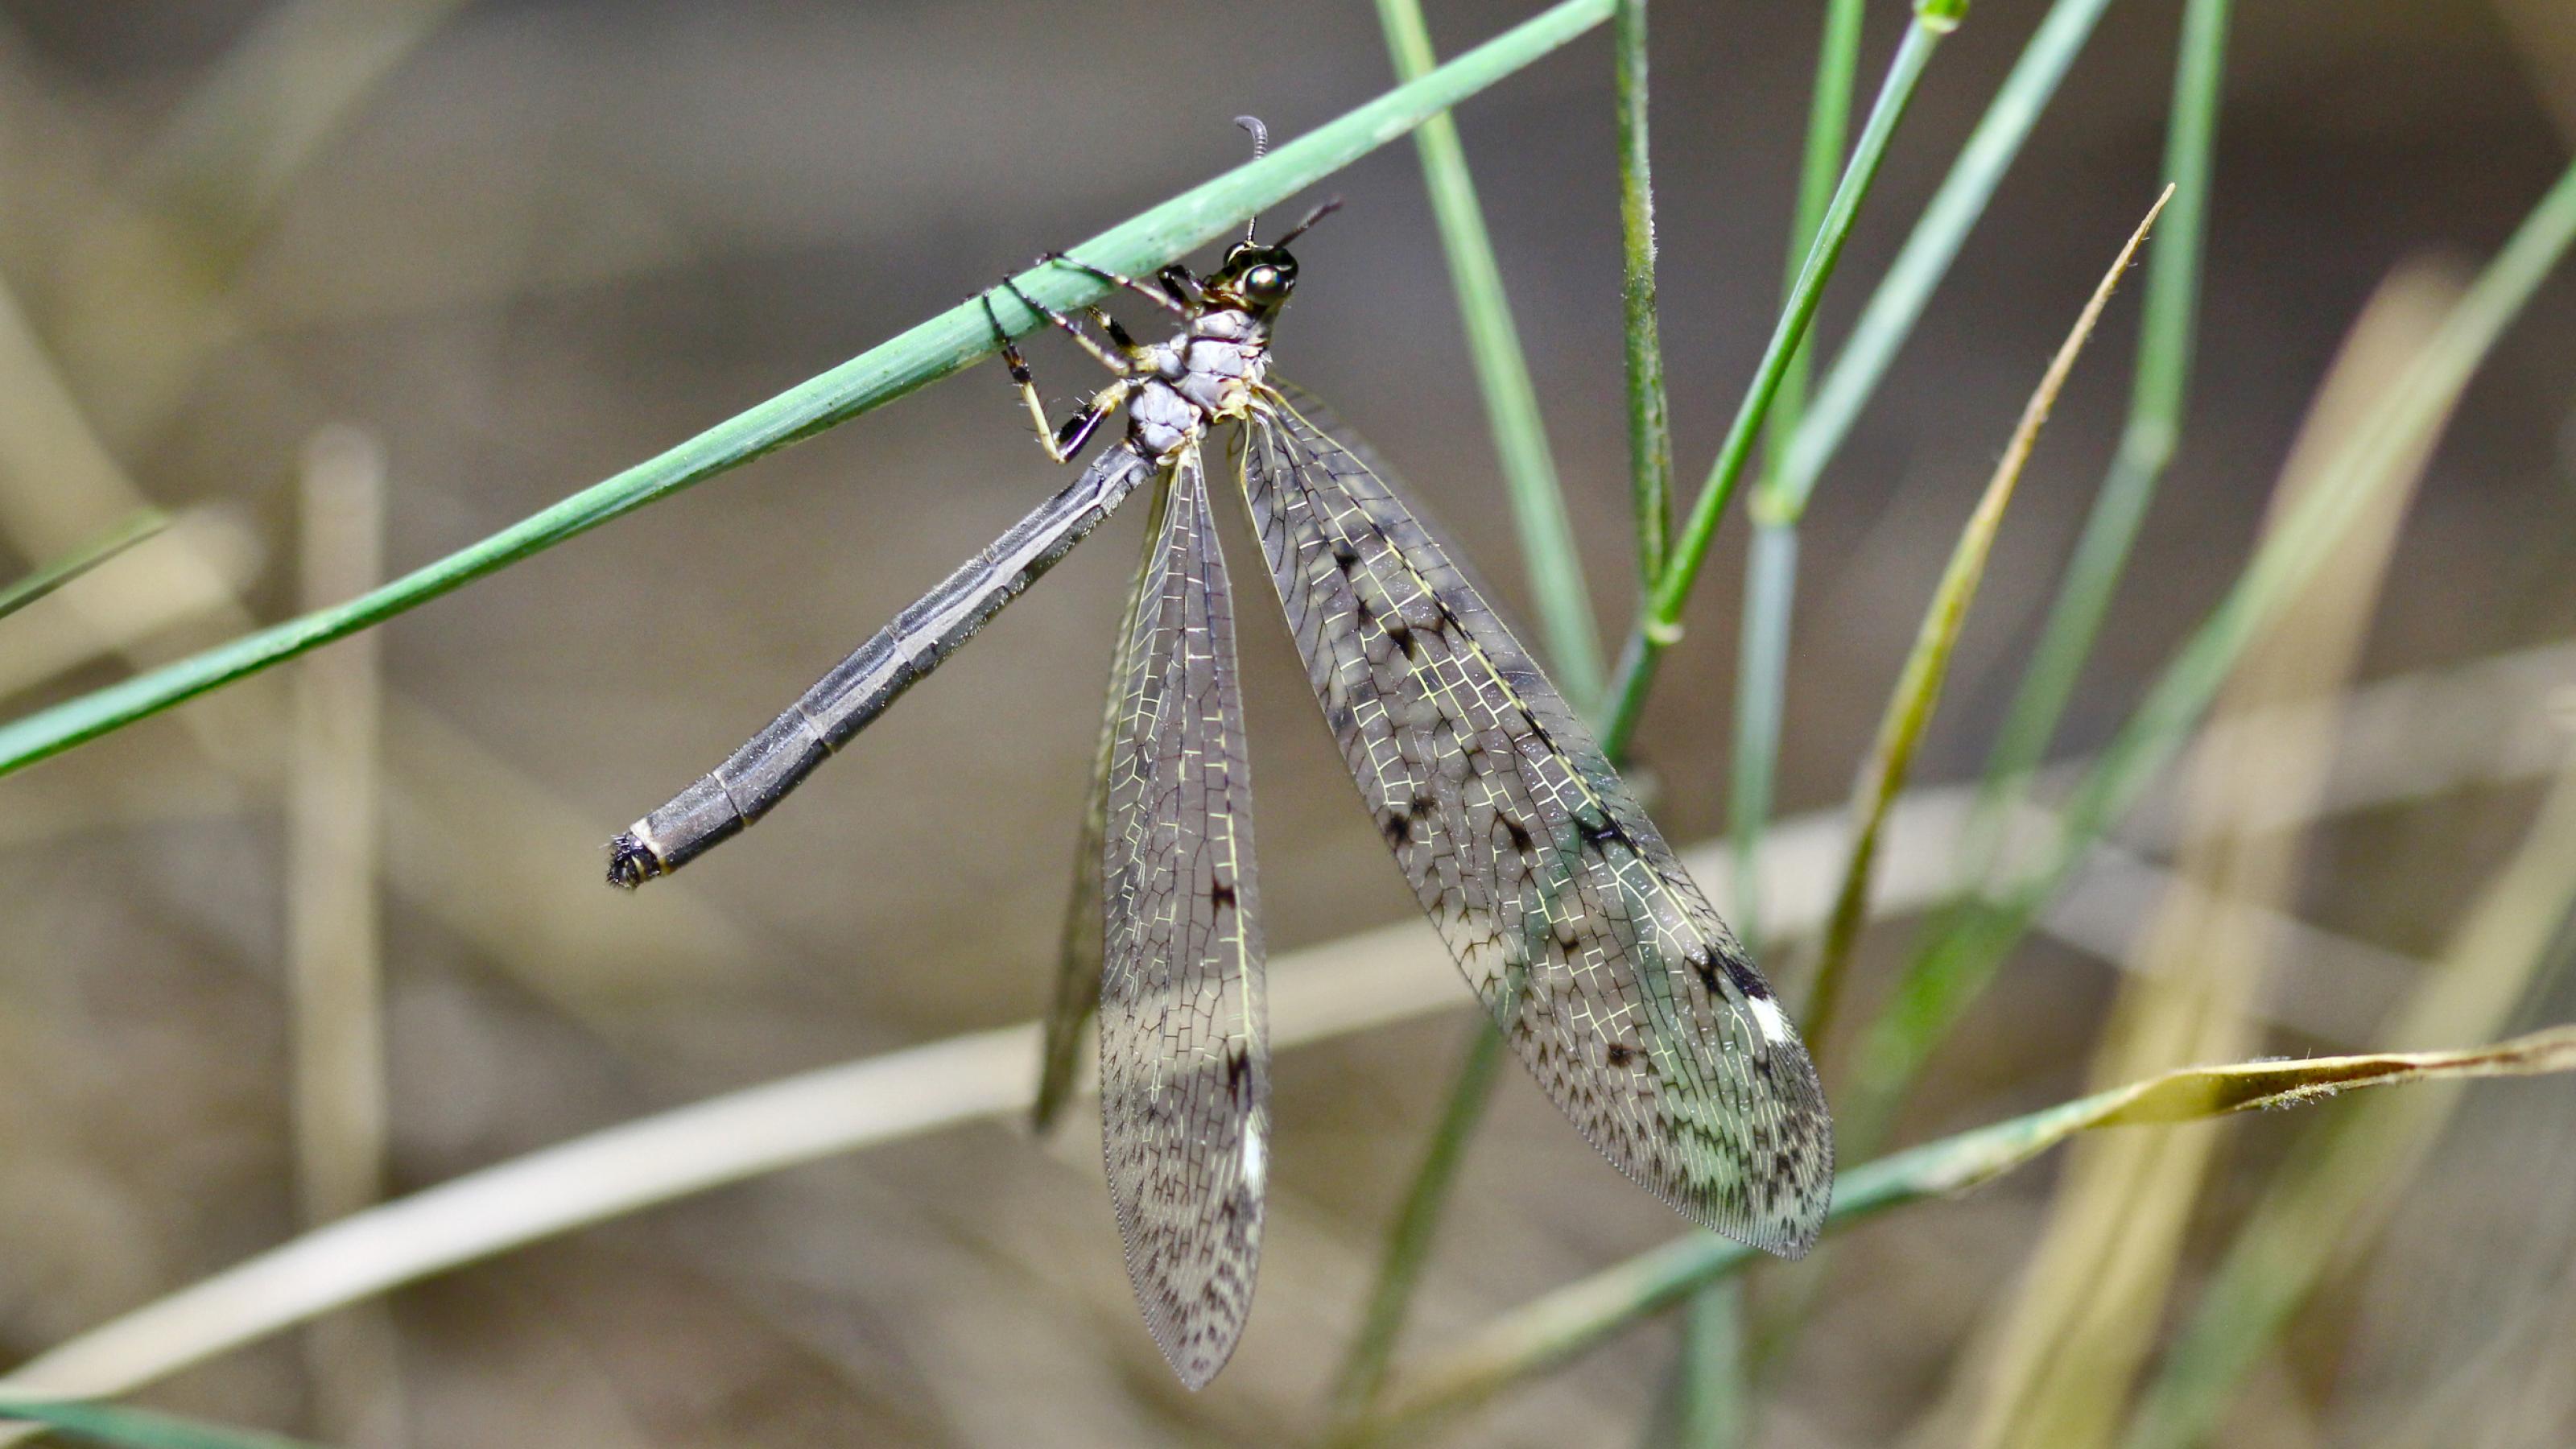 Ein bräunliches Insekt mit großen, dunklen Augen klammert sich mit sechs Beinen an einen grünen Grashalm. Die Flügel sind voll entfaltet und geöffnet.